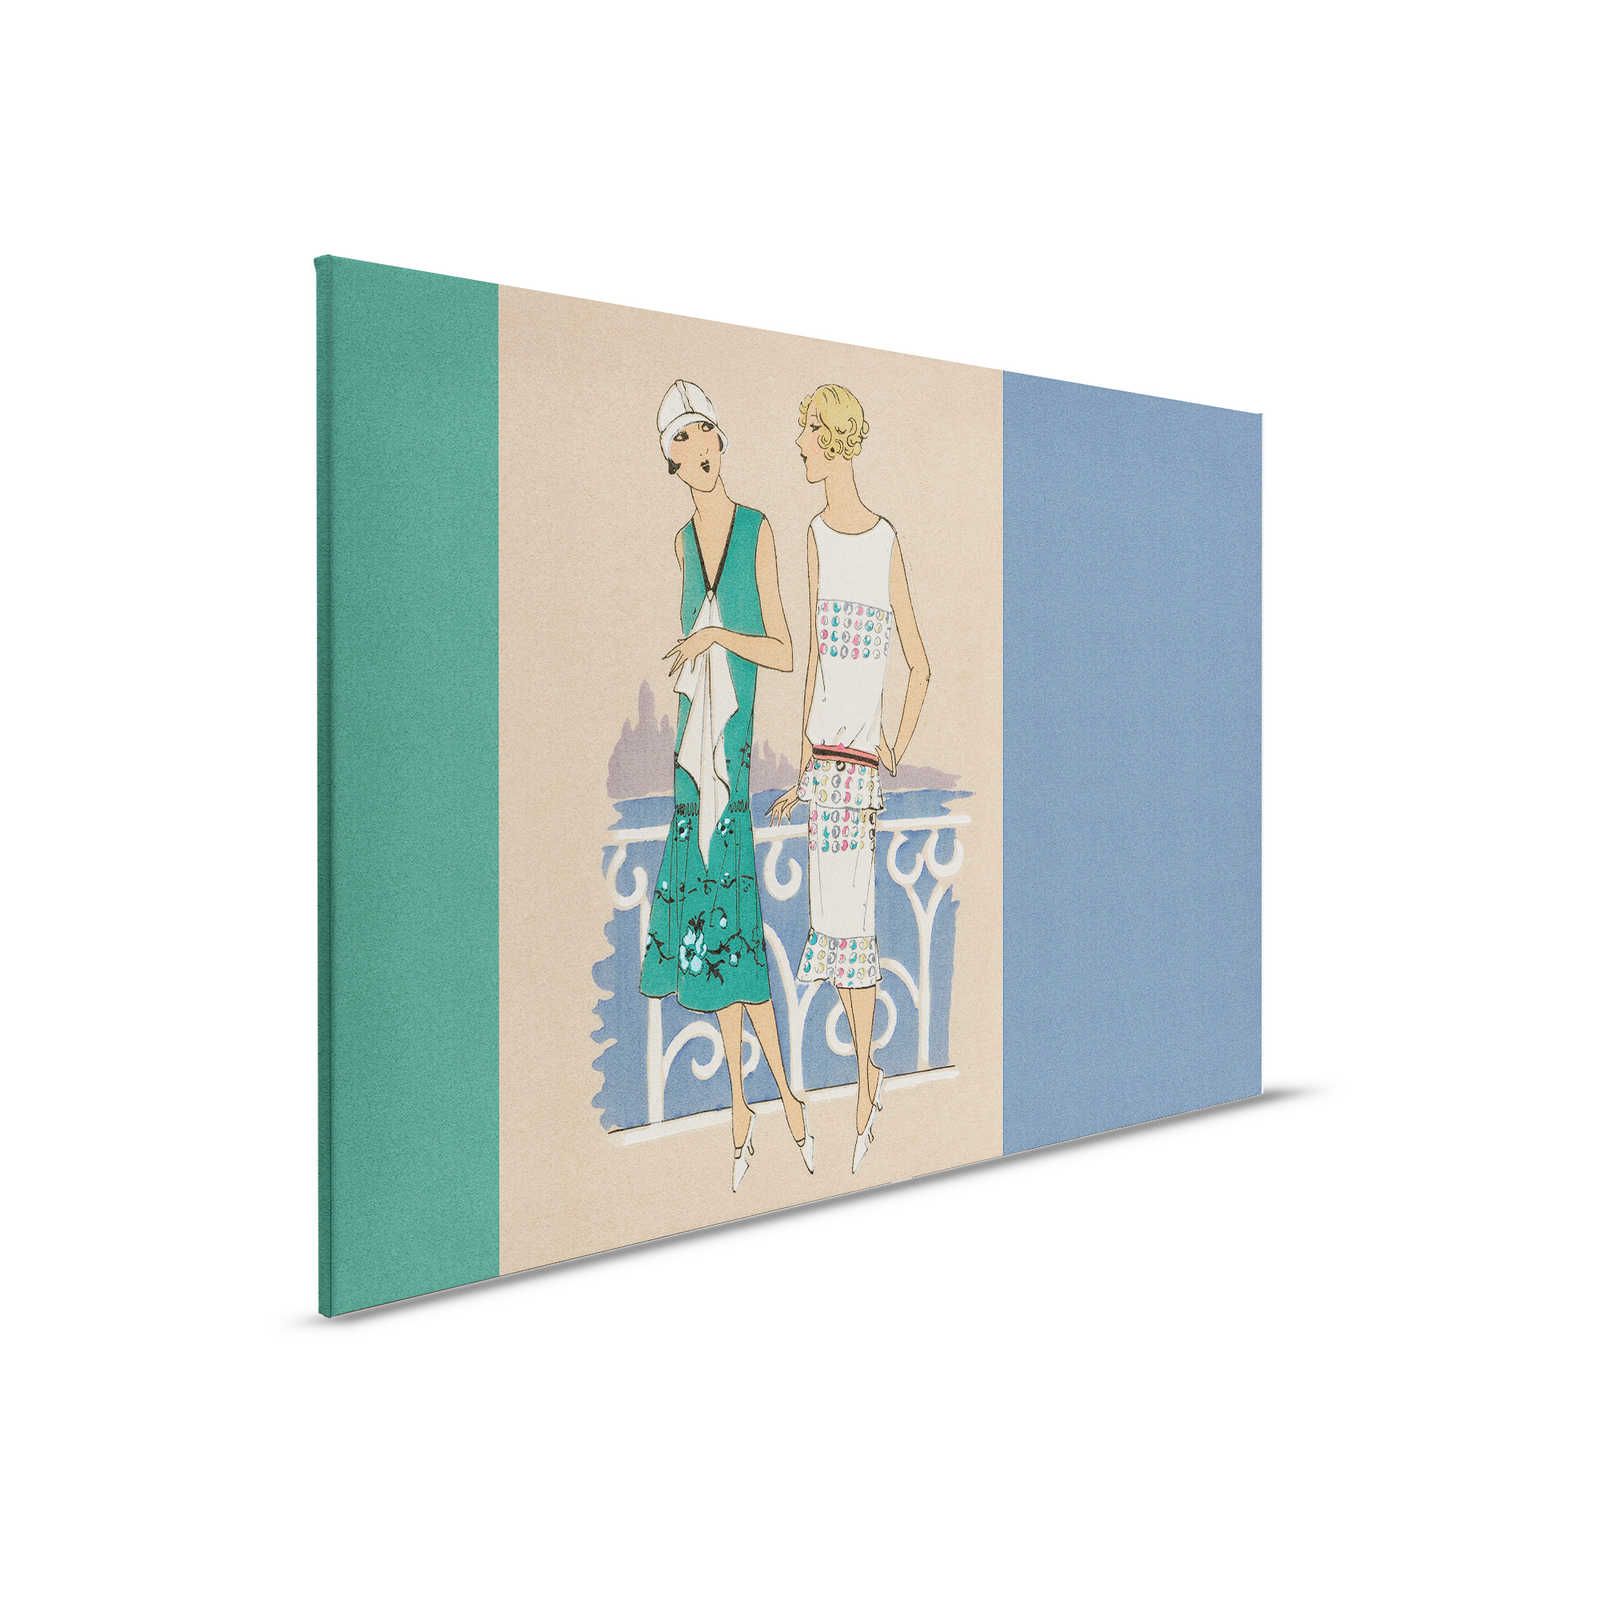 Parisienne 3 - Lienzo Retro Impresión de moda años 20 en azul y verde - 0,90 m x 0,60 m
